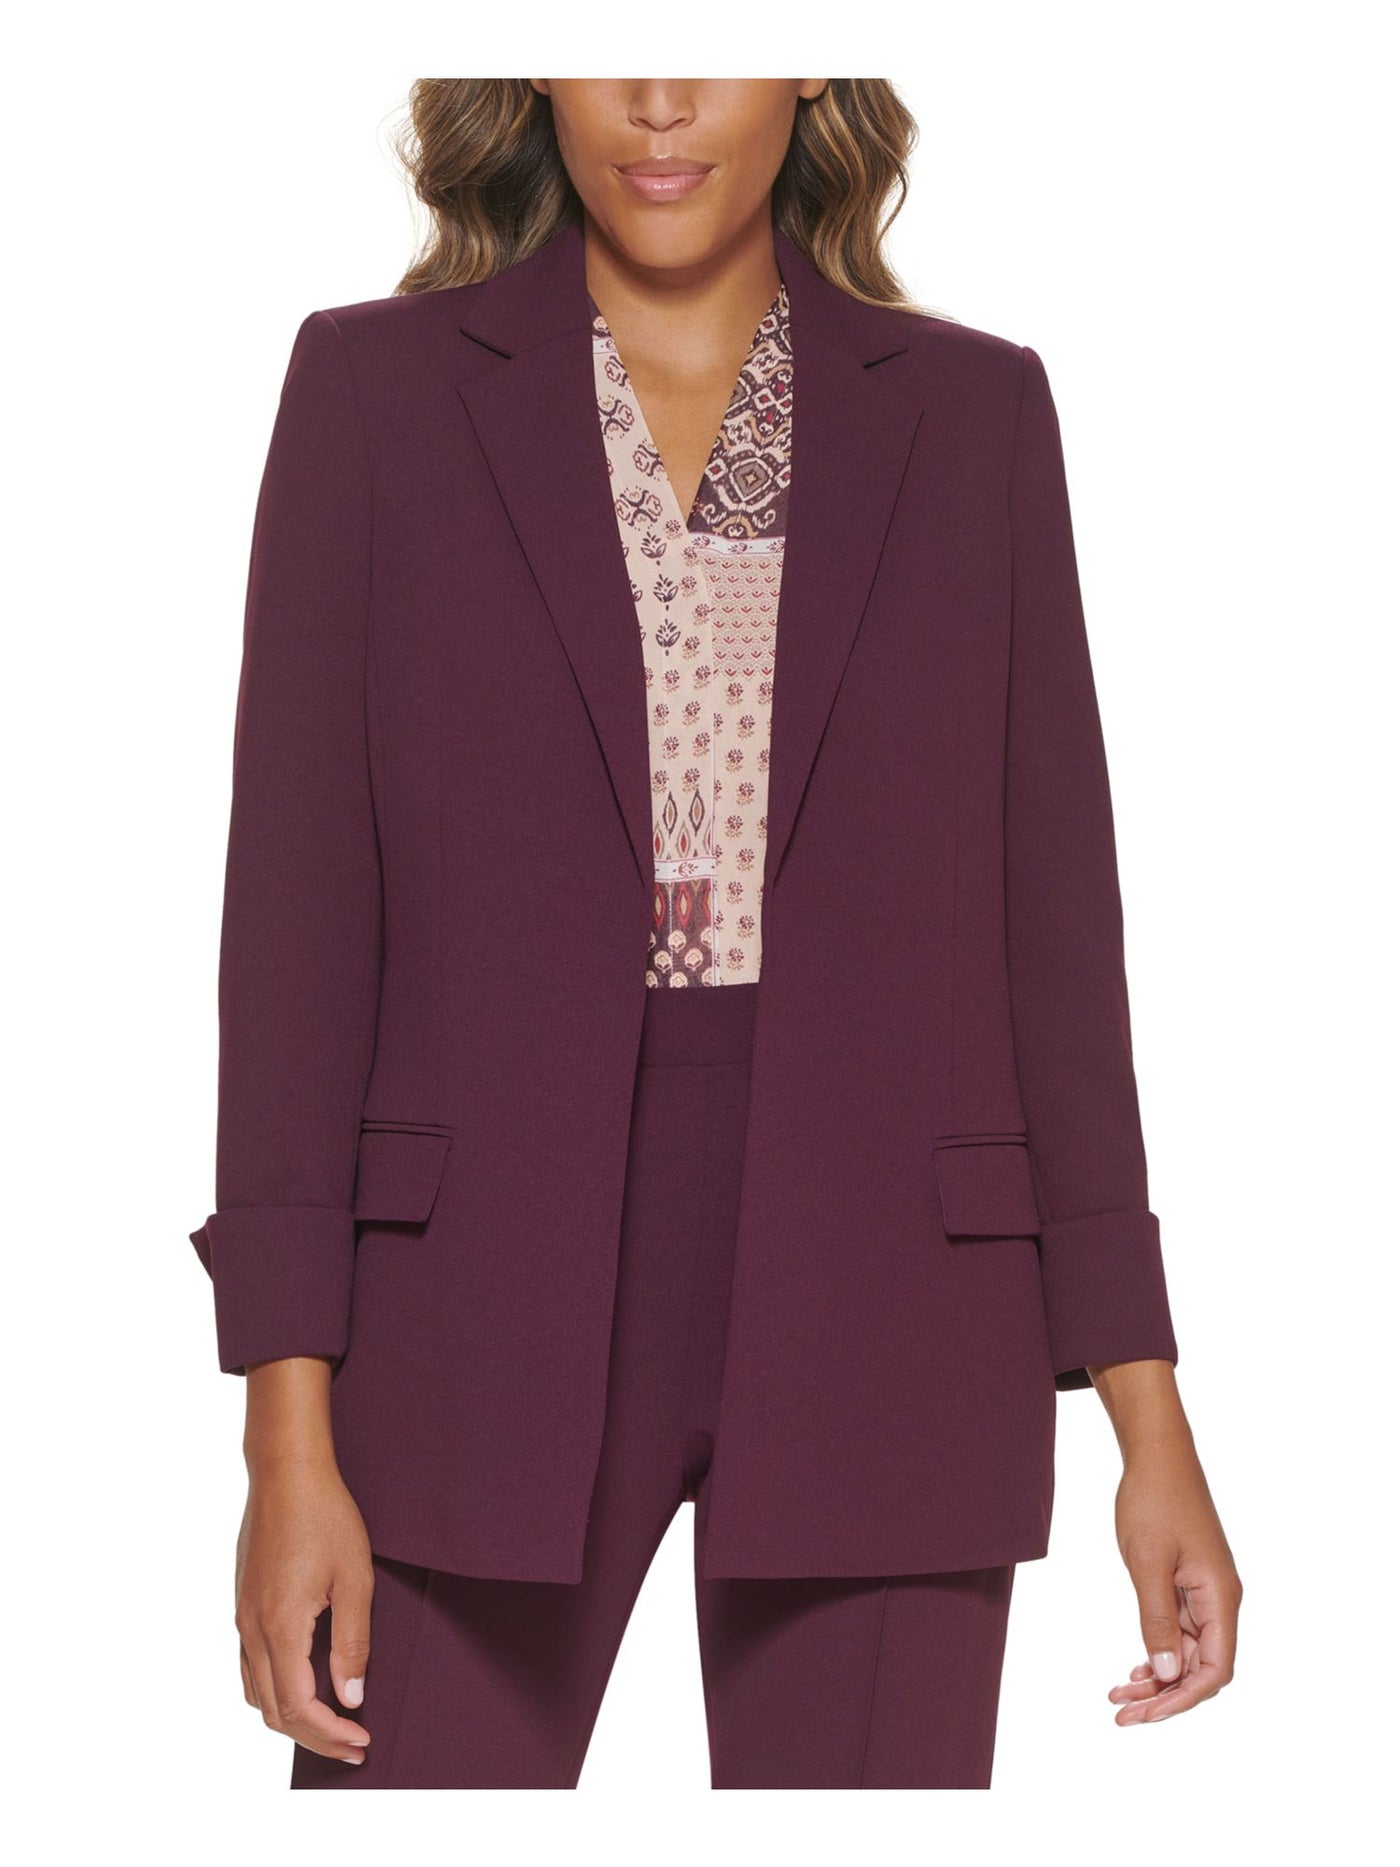 CALVIN KLEIN Womens Burgundy Pocketed Textured Rolled Cuffs Notch Collar Wear To Work Jacket 2